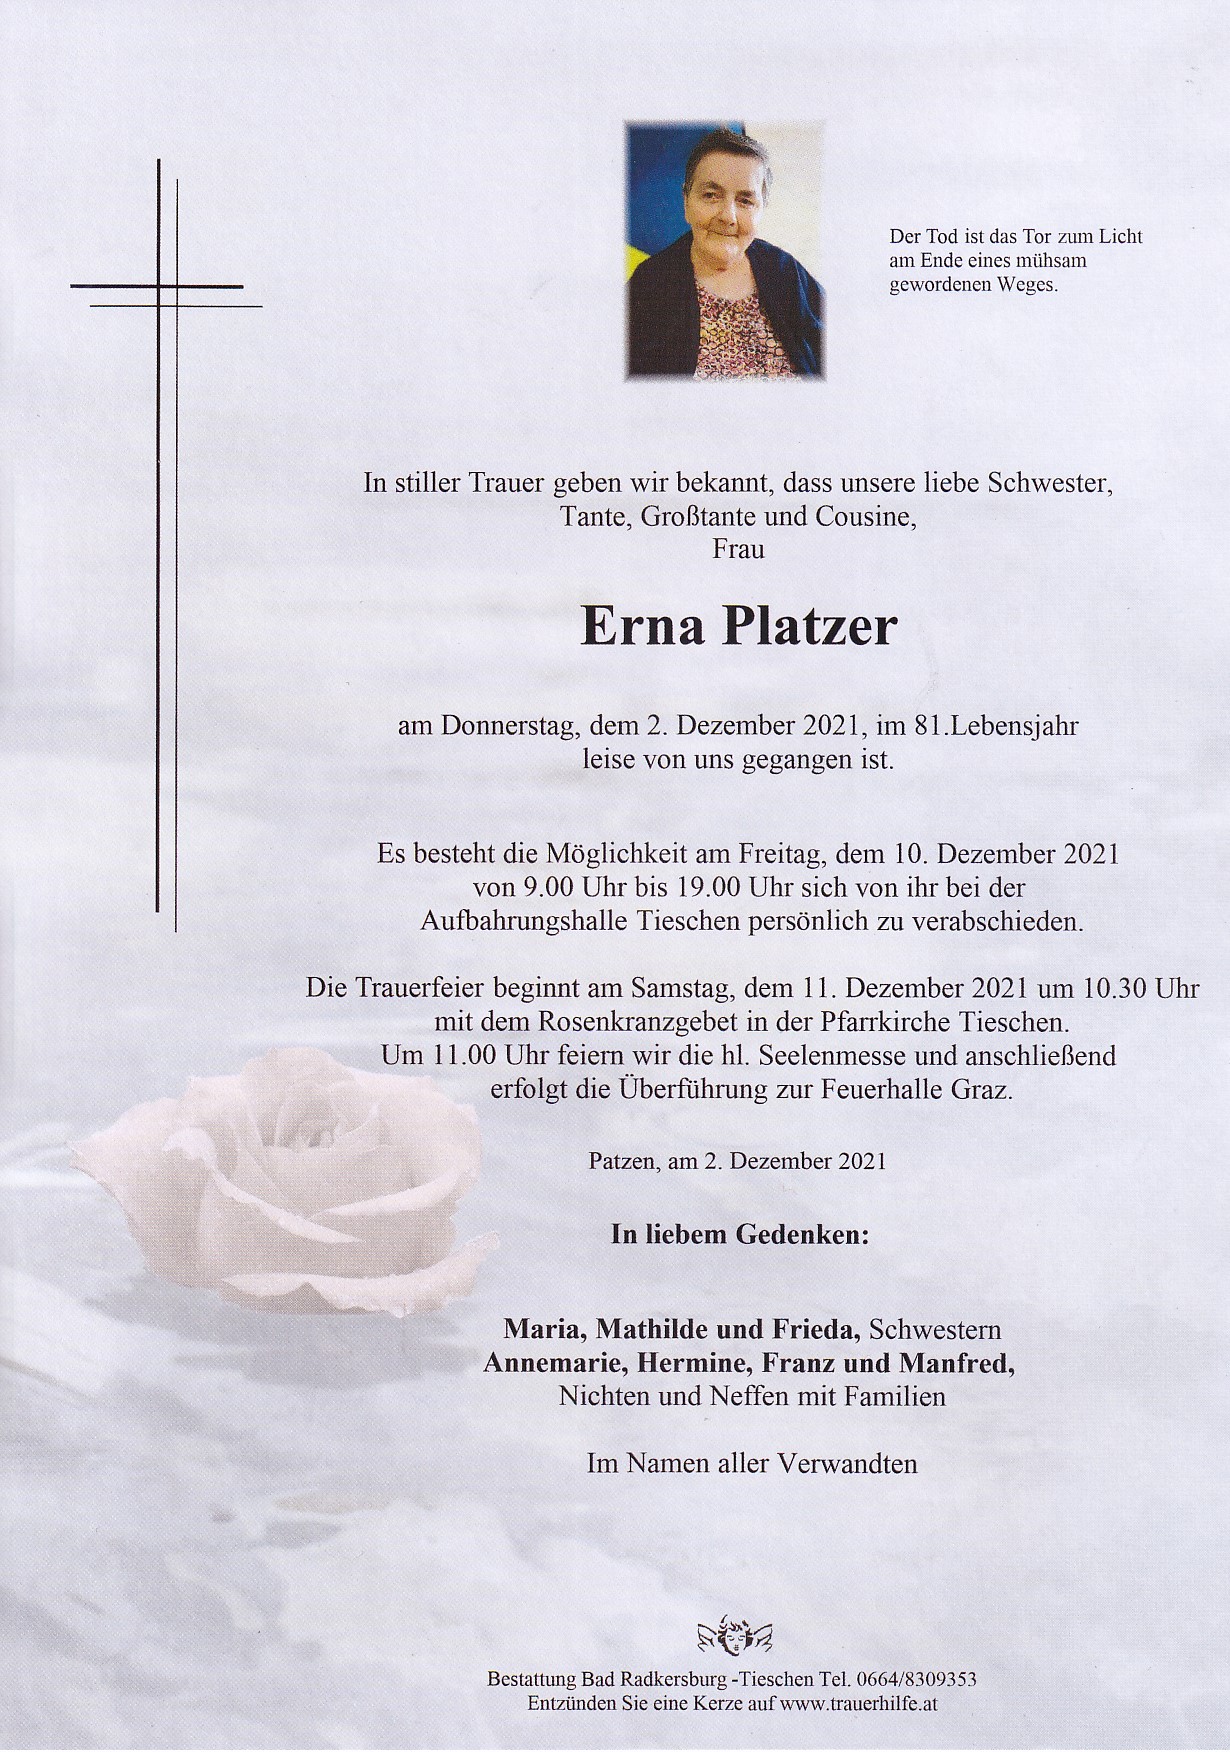 Erna Platzer